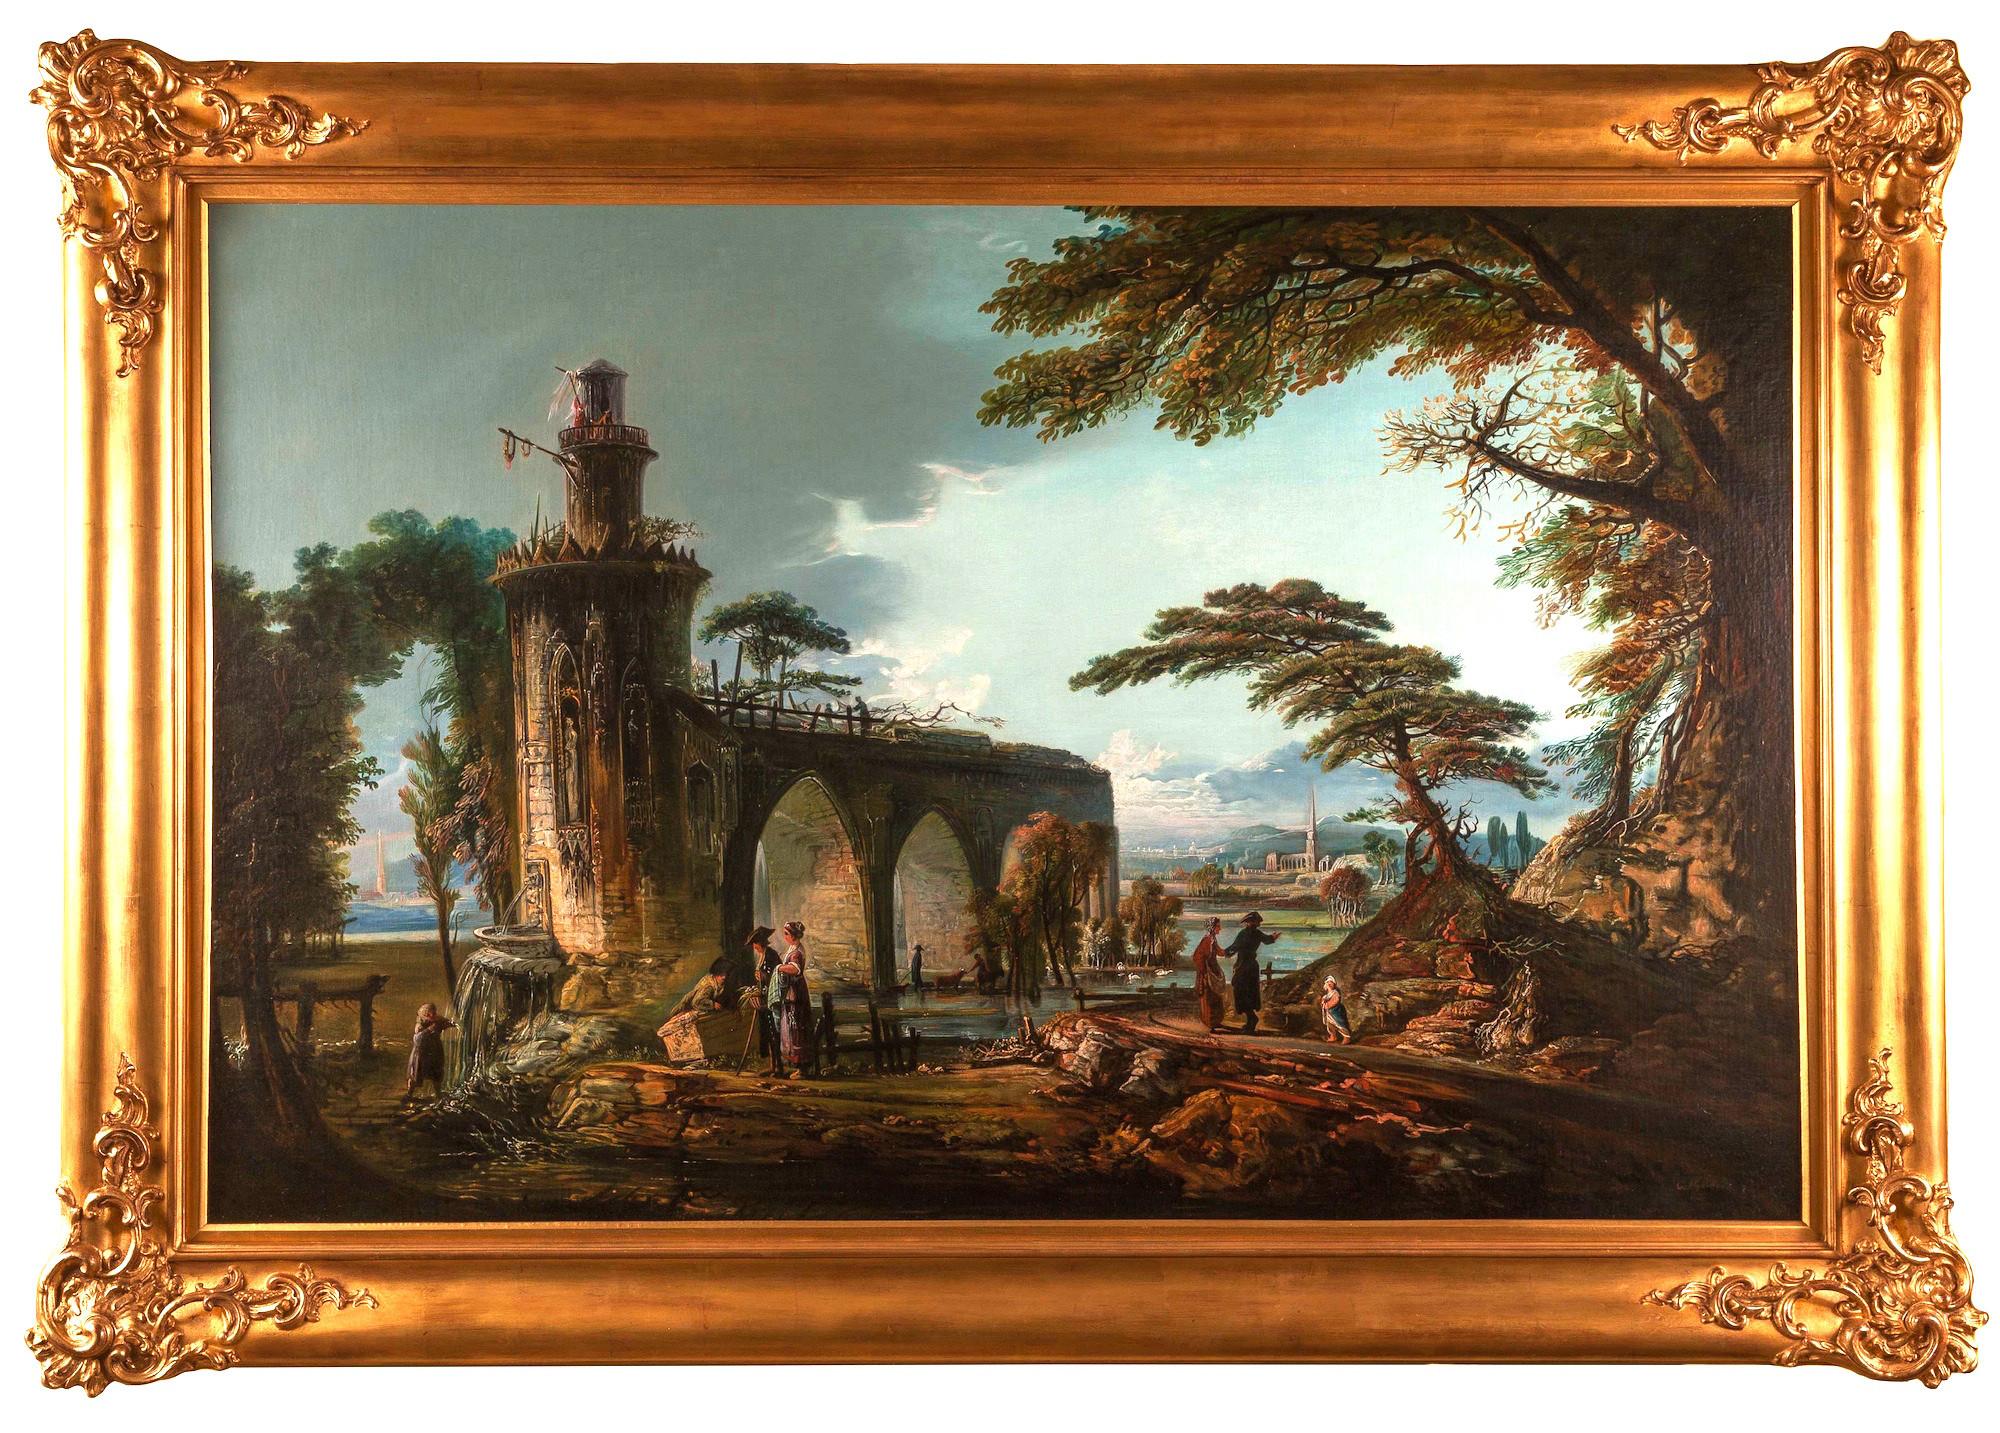 Ölgemälde; Italienische Landschaft im Stil von Claude Lorraine (1600-1682). 